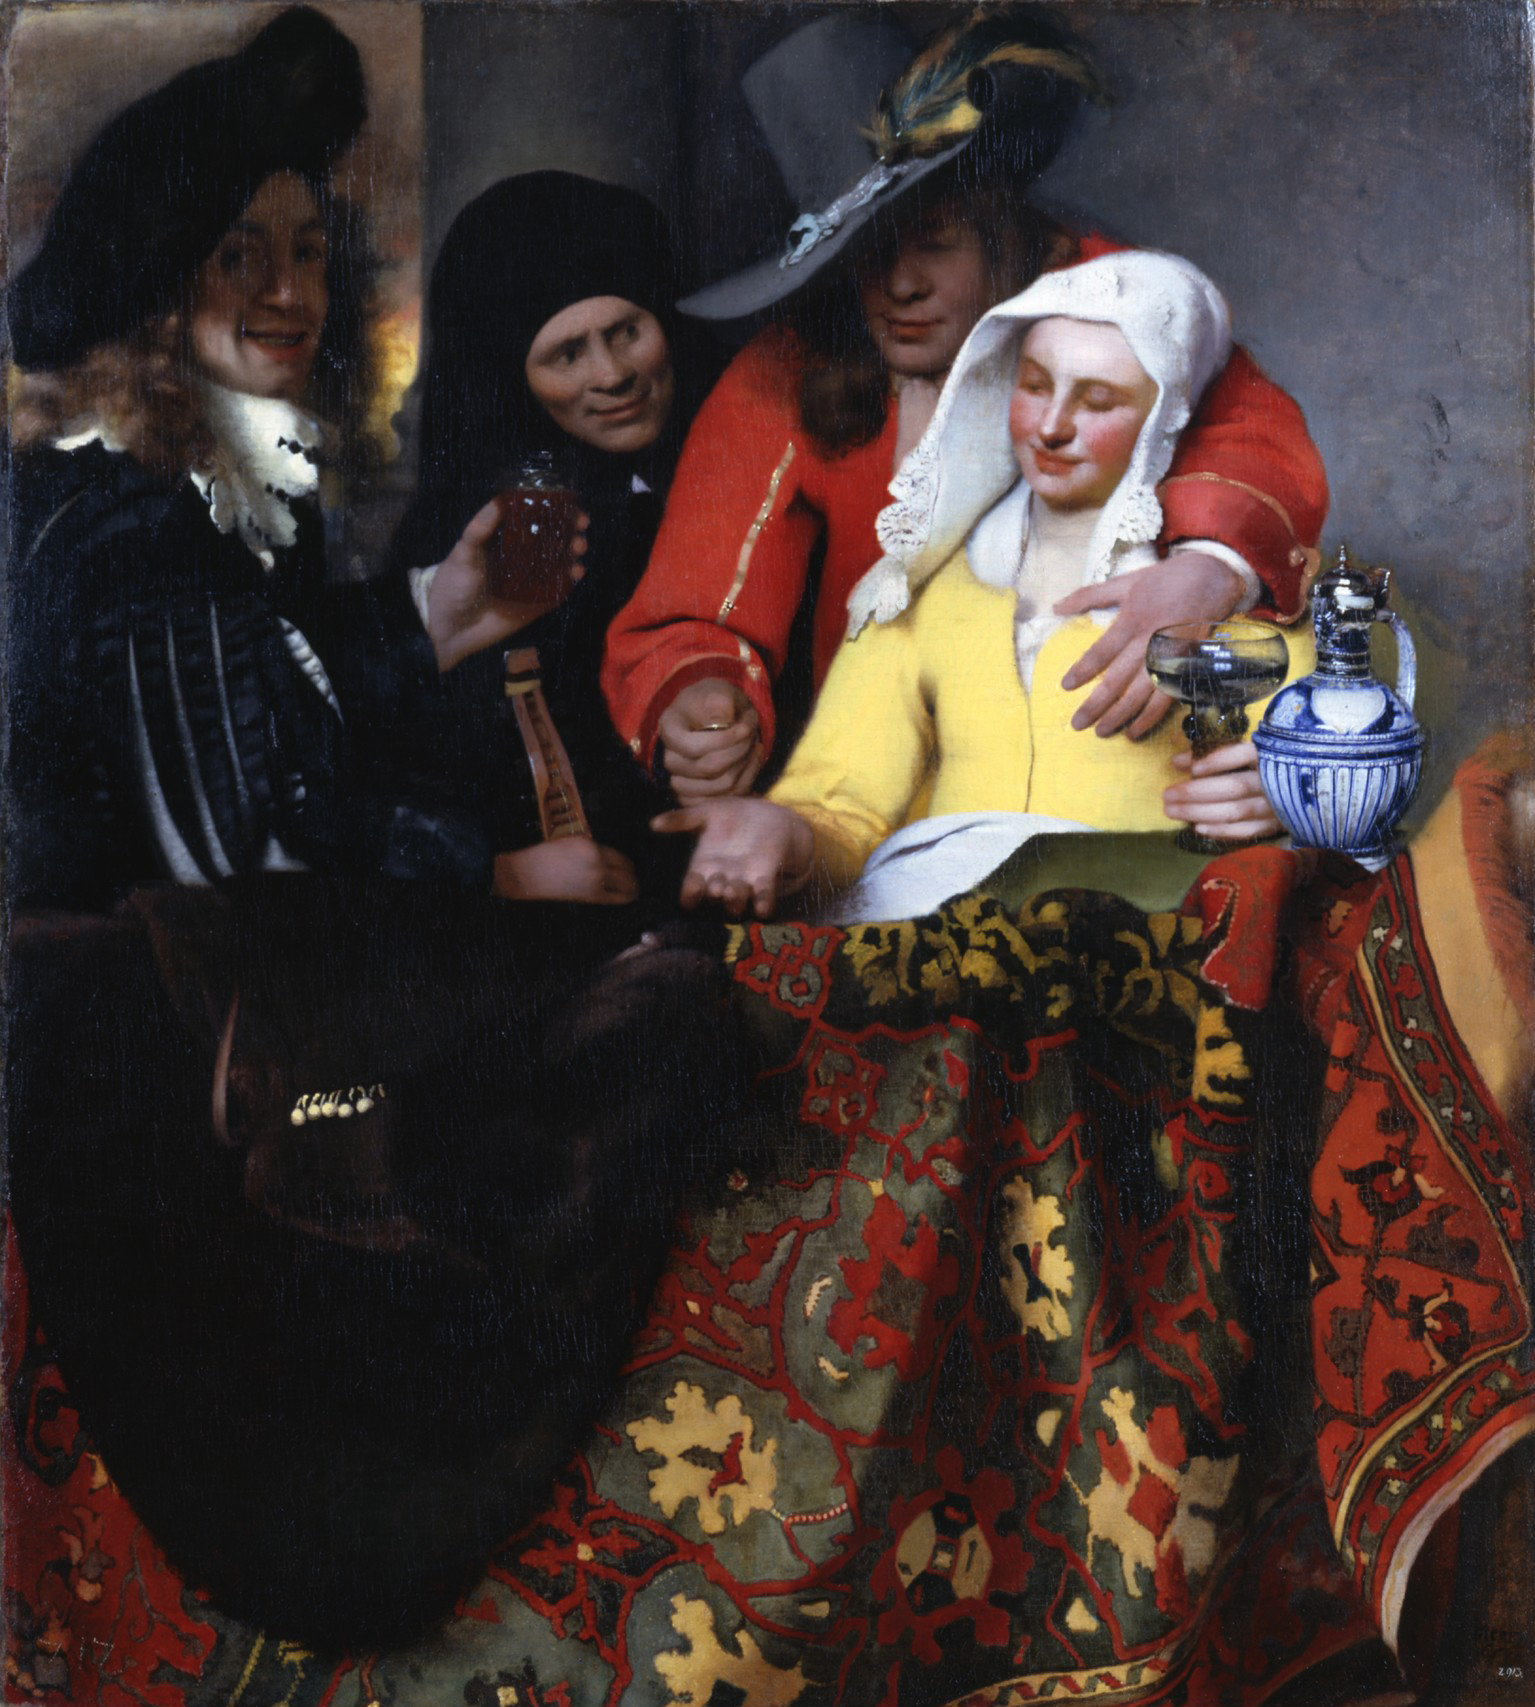 取り持ち女 by Johannes Vermeer - 1656年 - 143 x 130 cm 